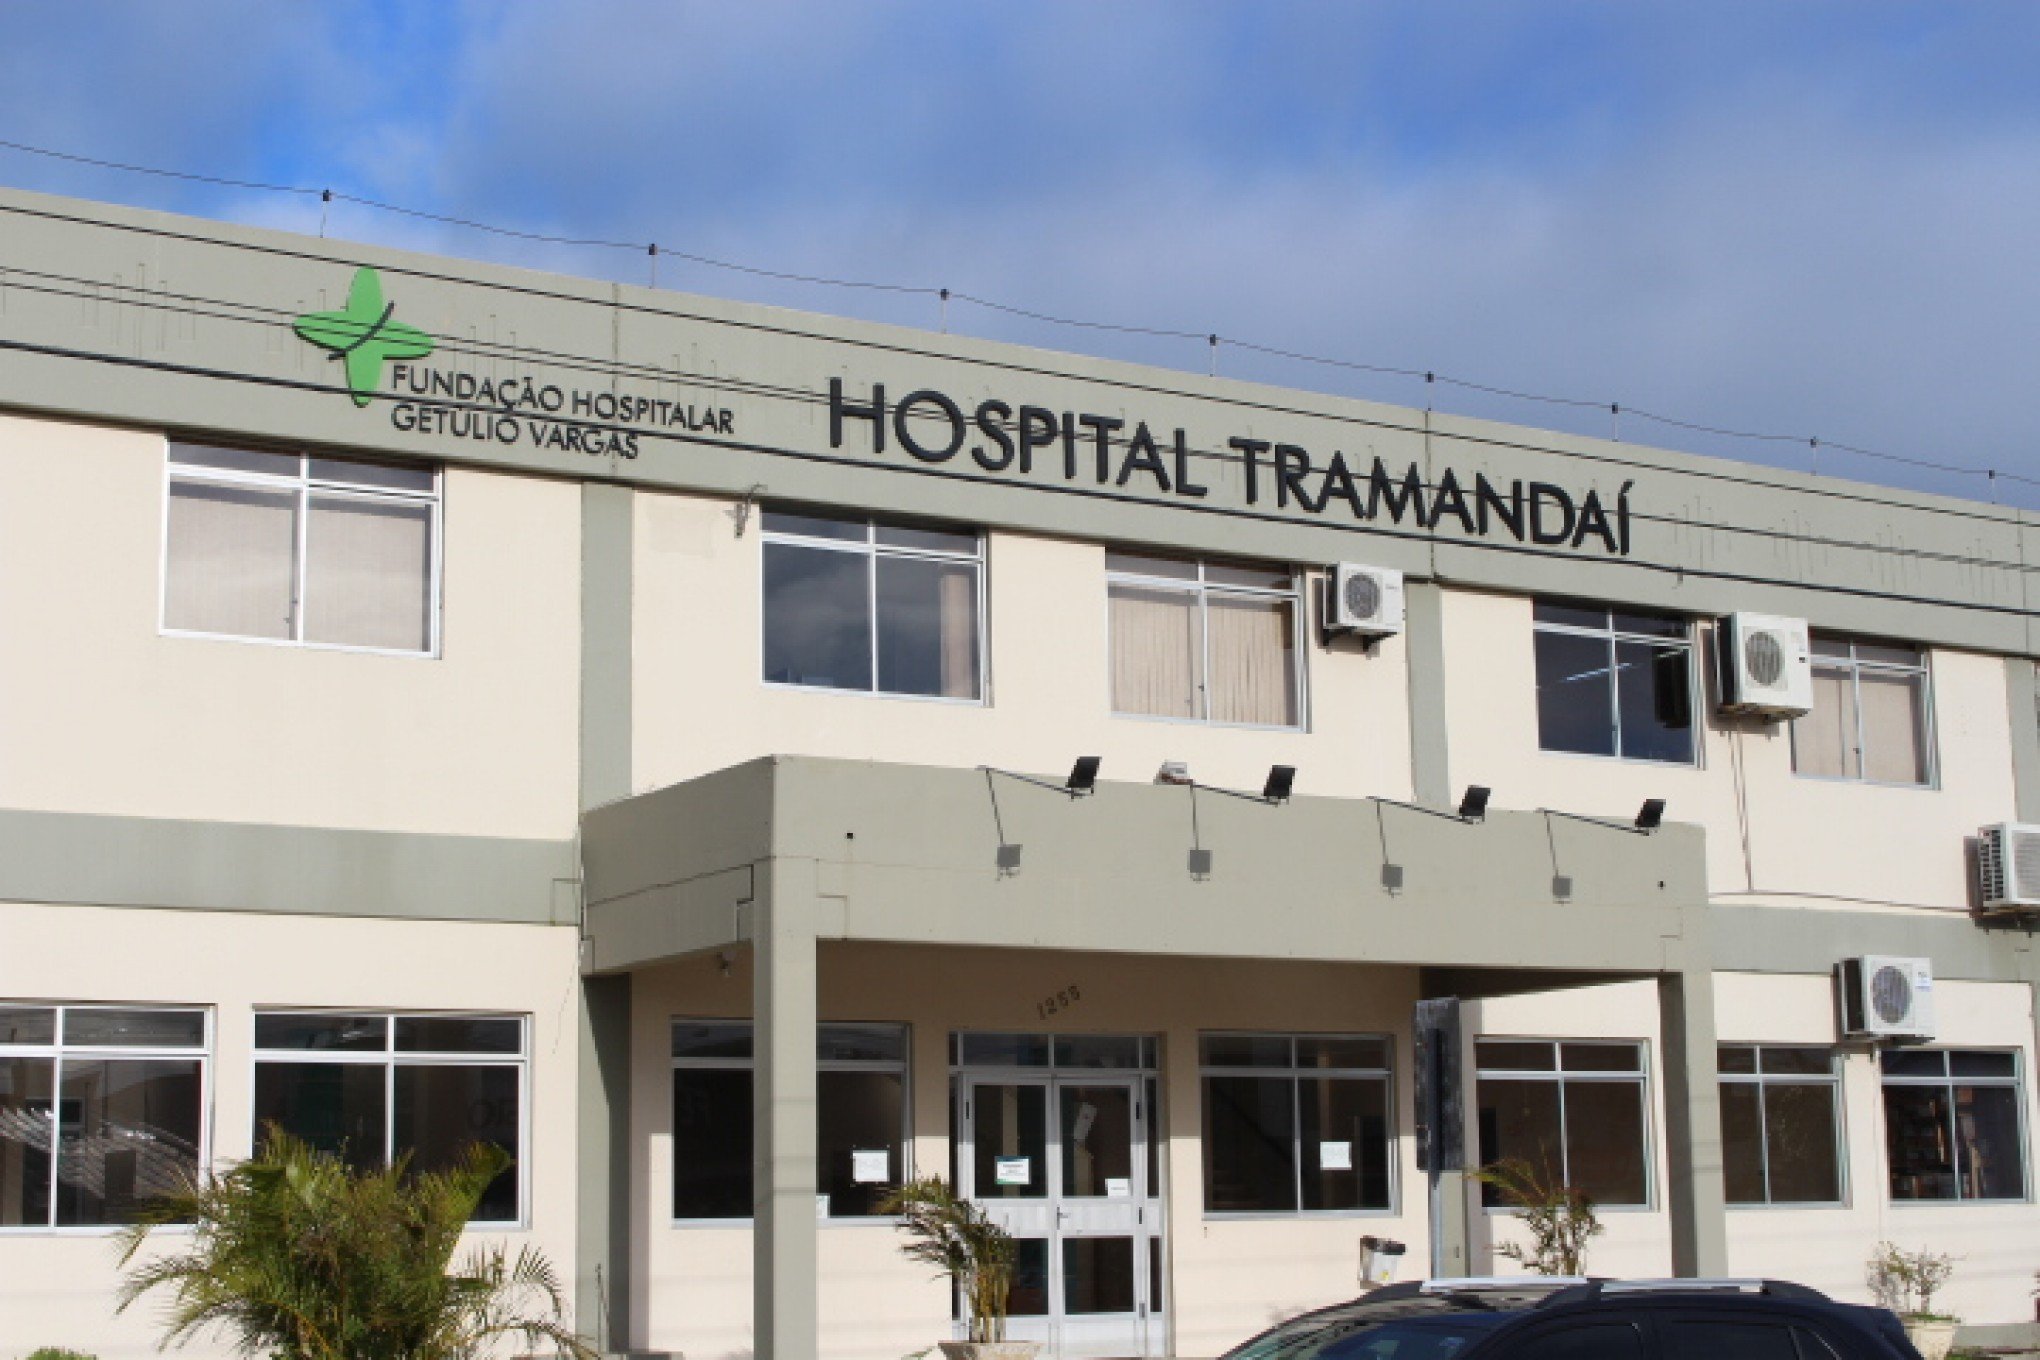 Após fechamento do centro obstétrico, Estado diz que vai rescindir contrato com administradora do hospital da região